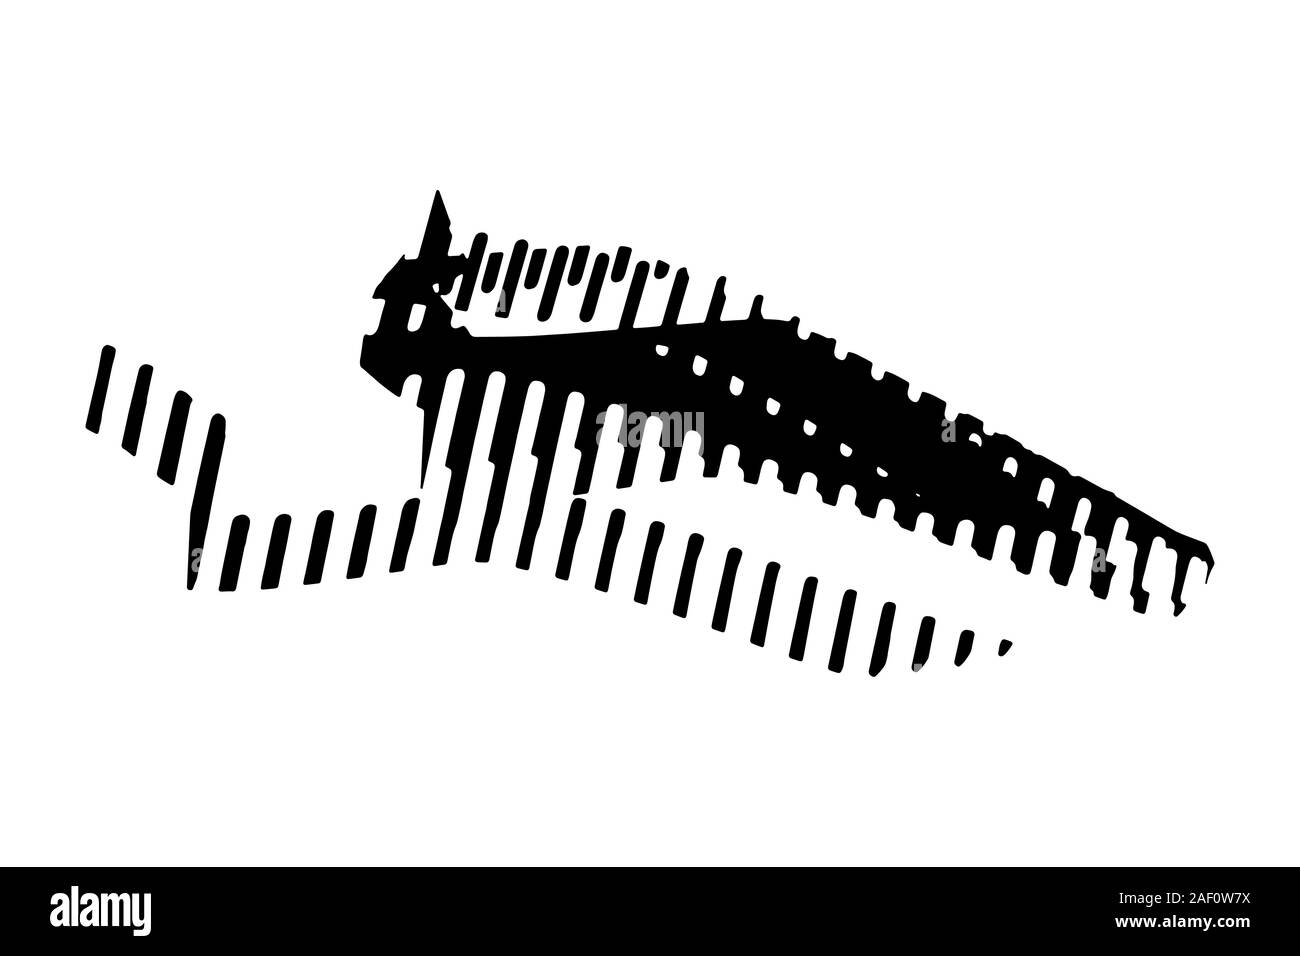 Schwarz abstrakt Tier Silhouette auf einem weißen Hintergrund. Fantasy bat oder Drachen mit Mustern und Ornamenten. Moderne Skizze art Design. EPS 10. Stock Vektor